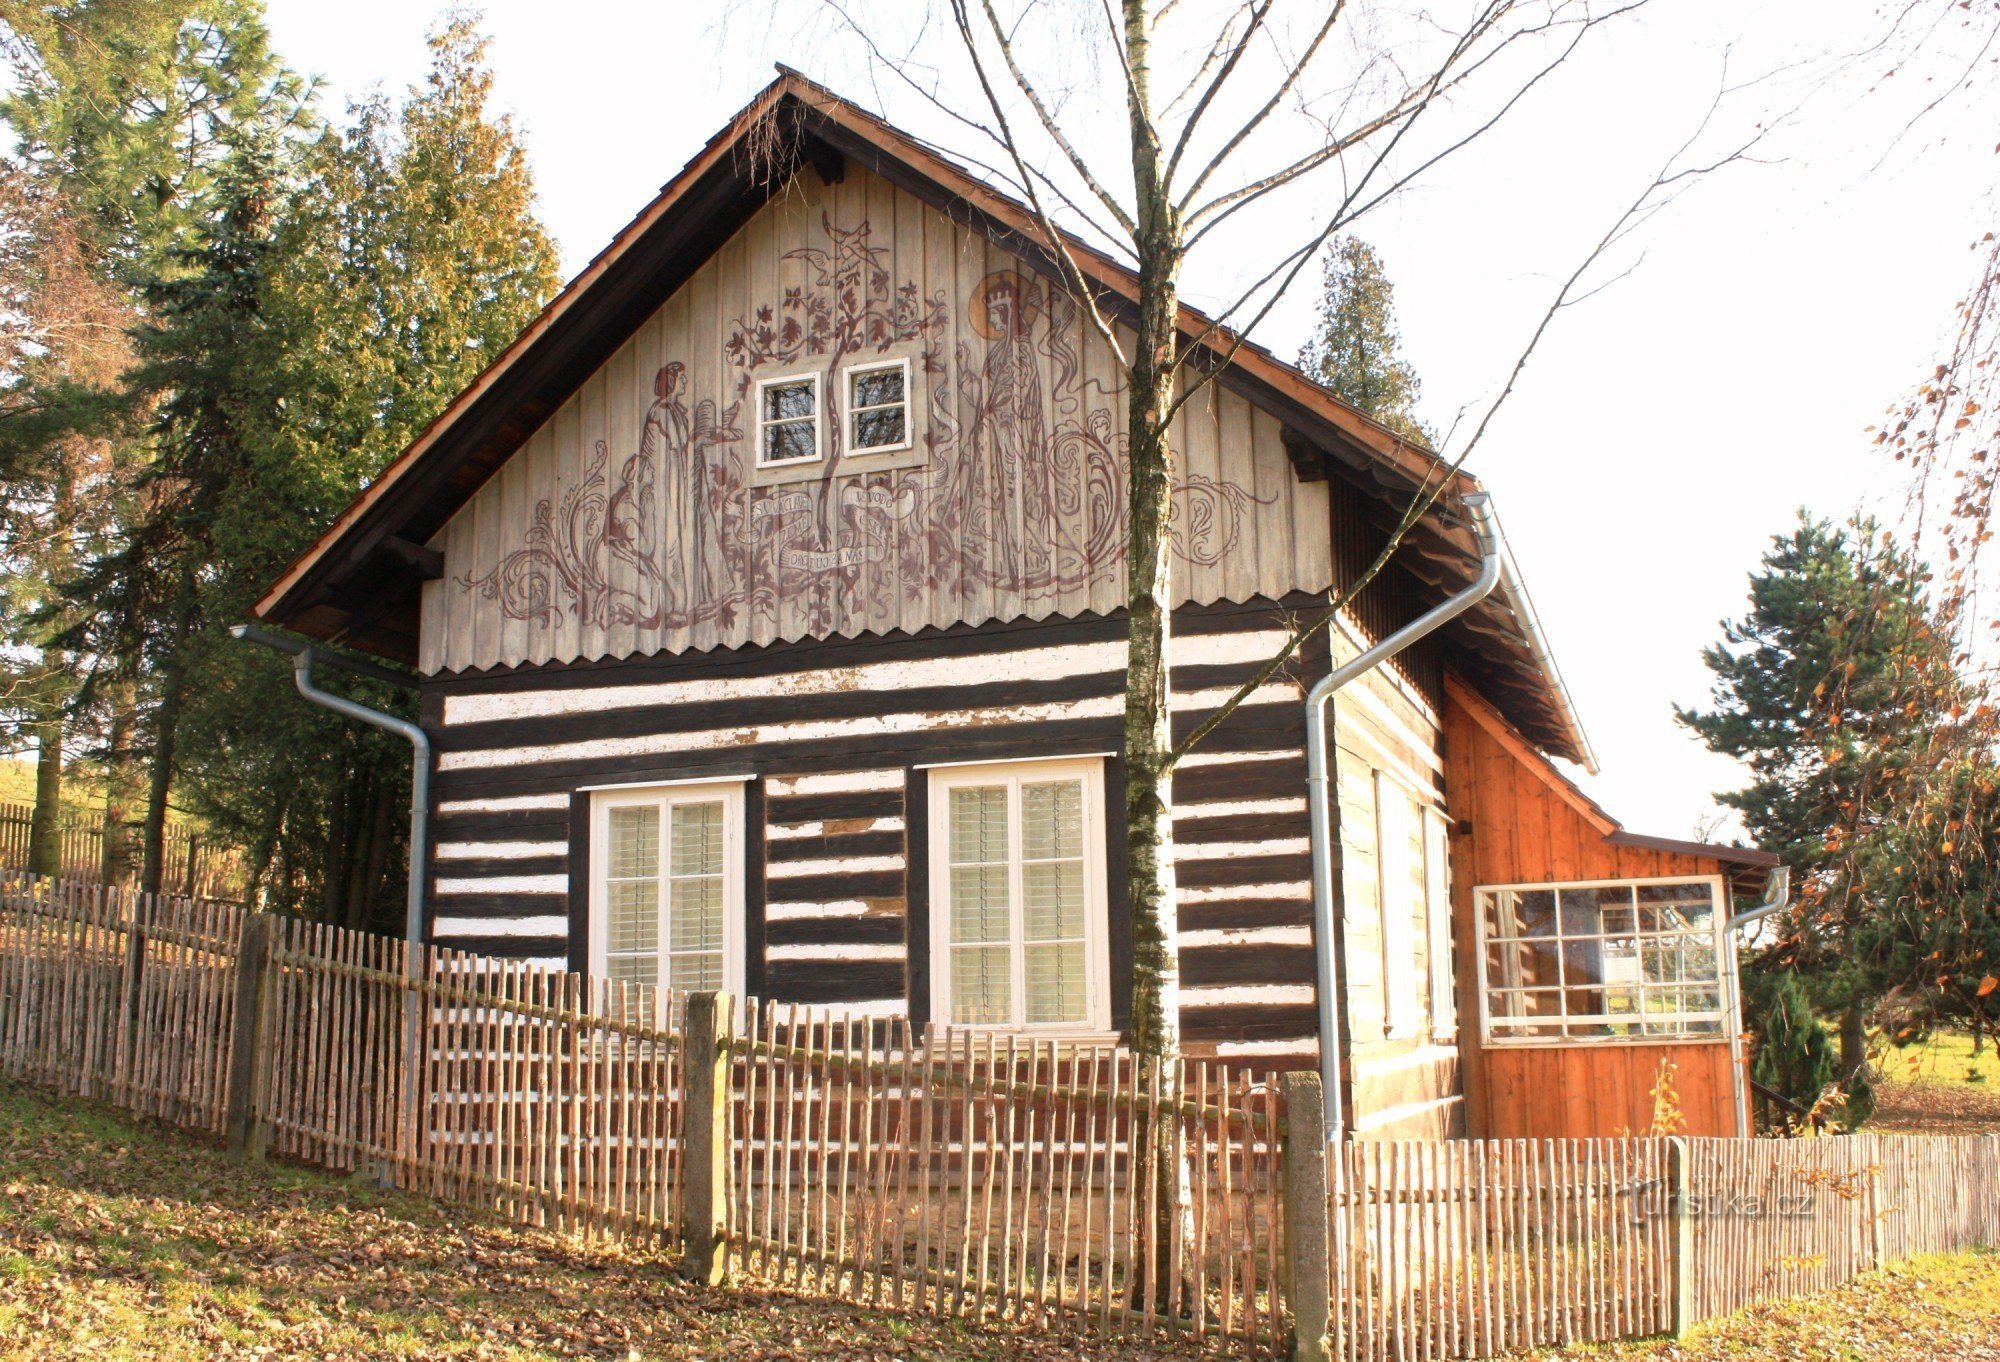 Kozlov - Hütte von Max Švabinský, Herbst 2010